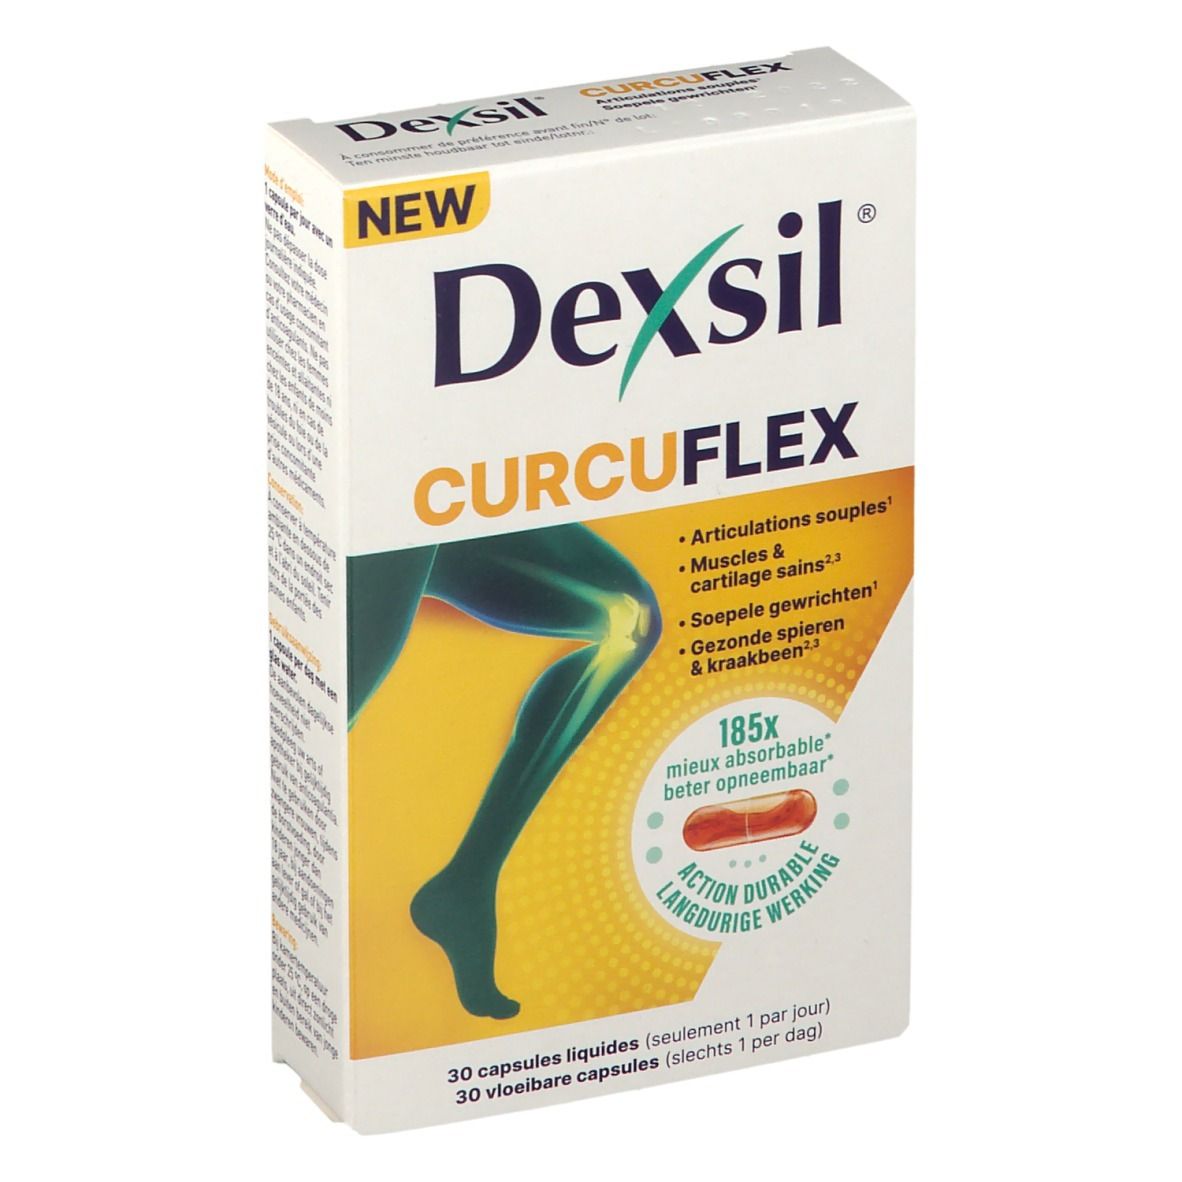 DexSil® CurcuFlex - Articulations souples, Muscles et cartilages sains, avec Curcuma